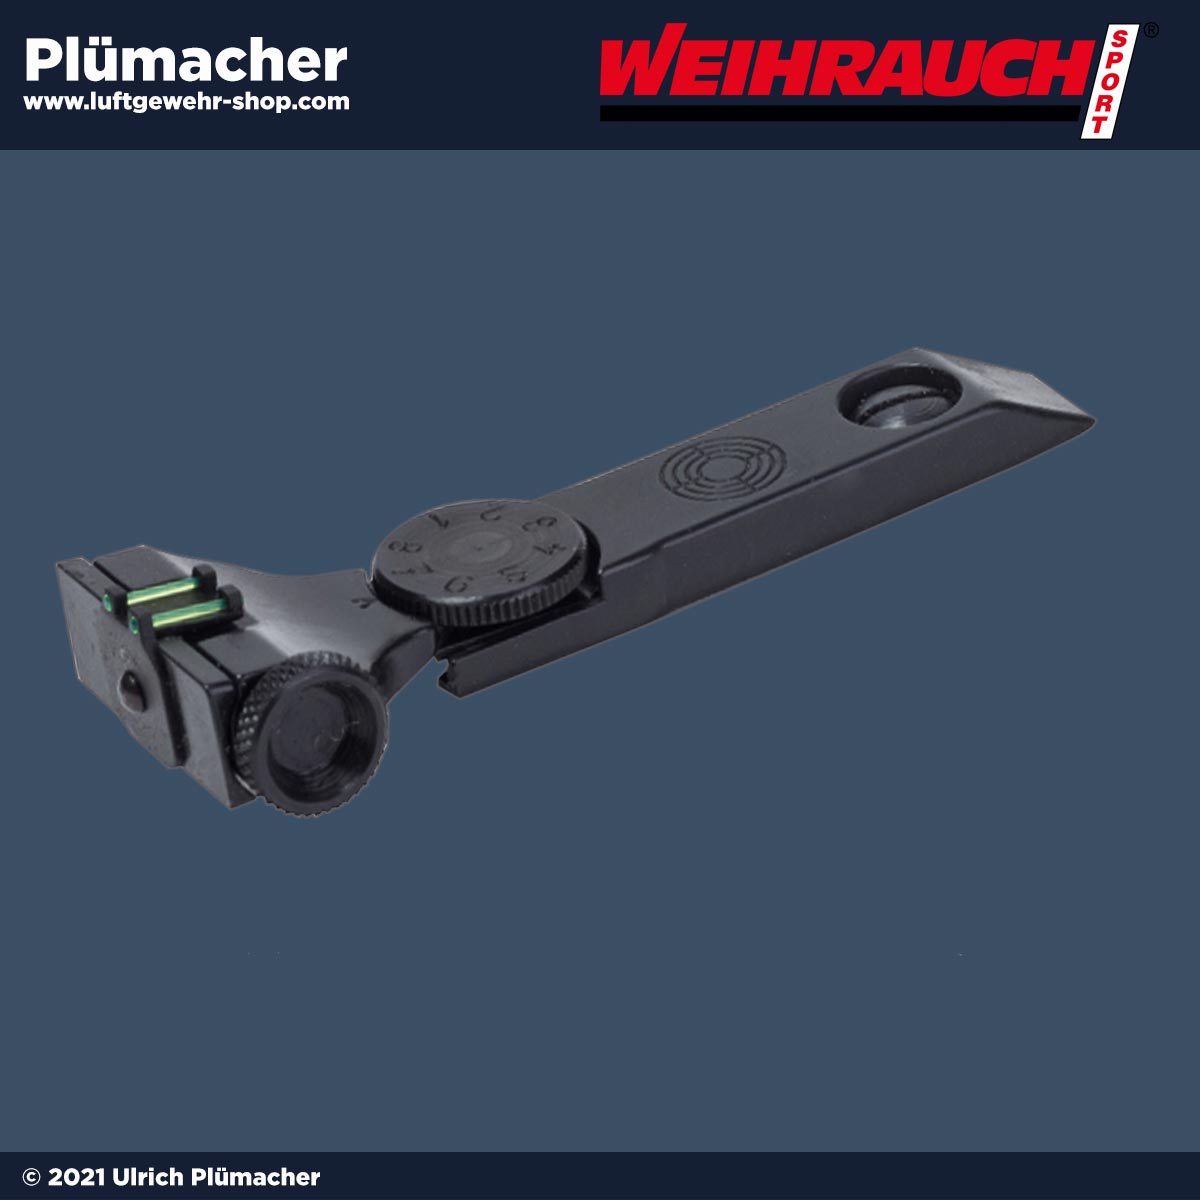 Weihrauch Mikrometervisier Fiber Optik für Weihrauch Luftgewehre